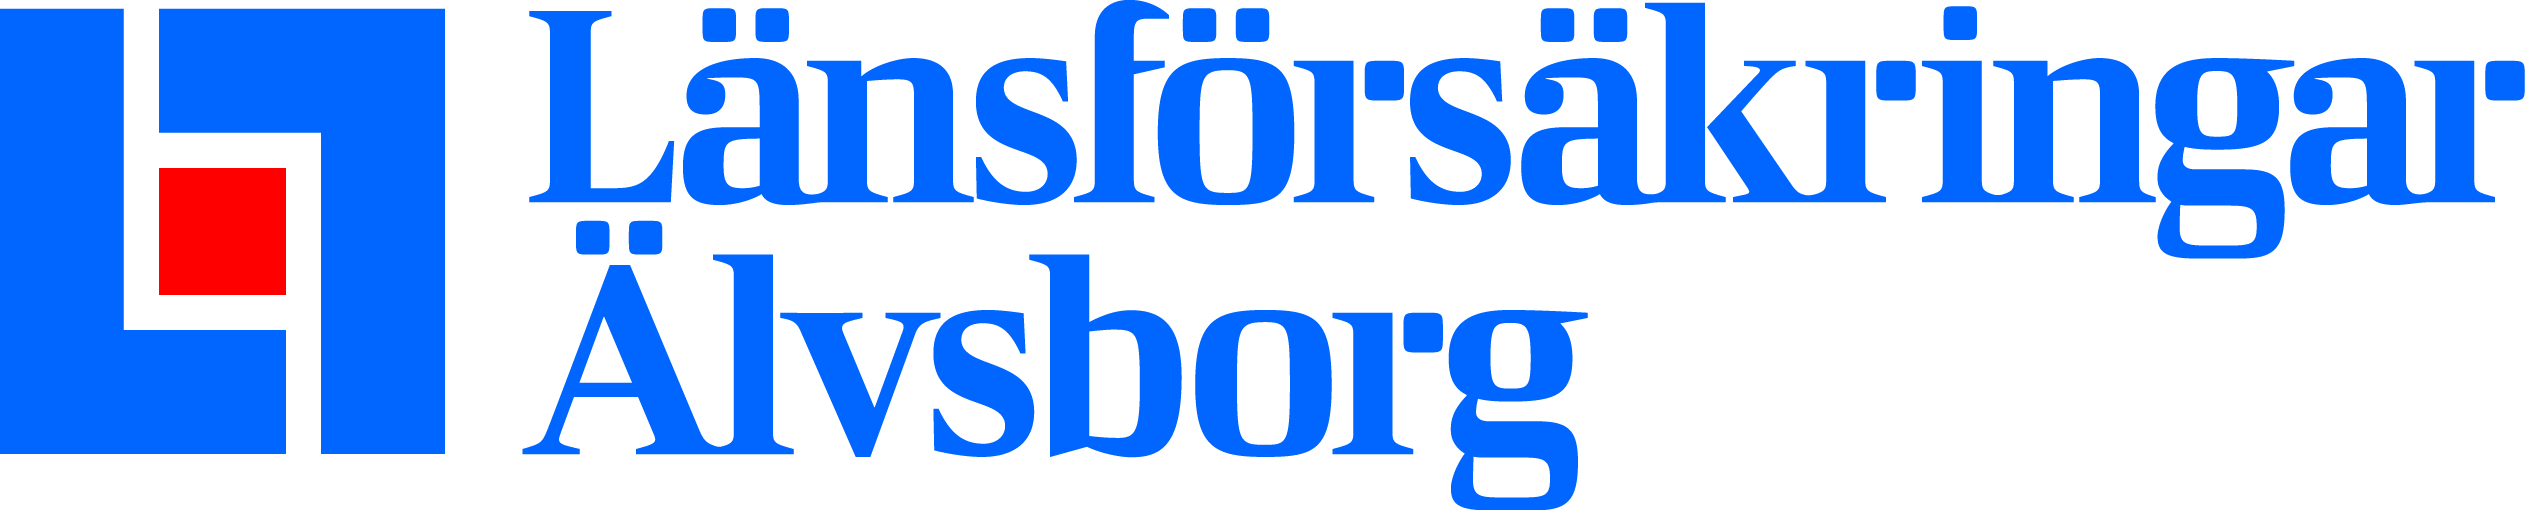 Länsförsäkringar Älvsborgs logotyp